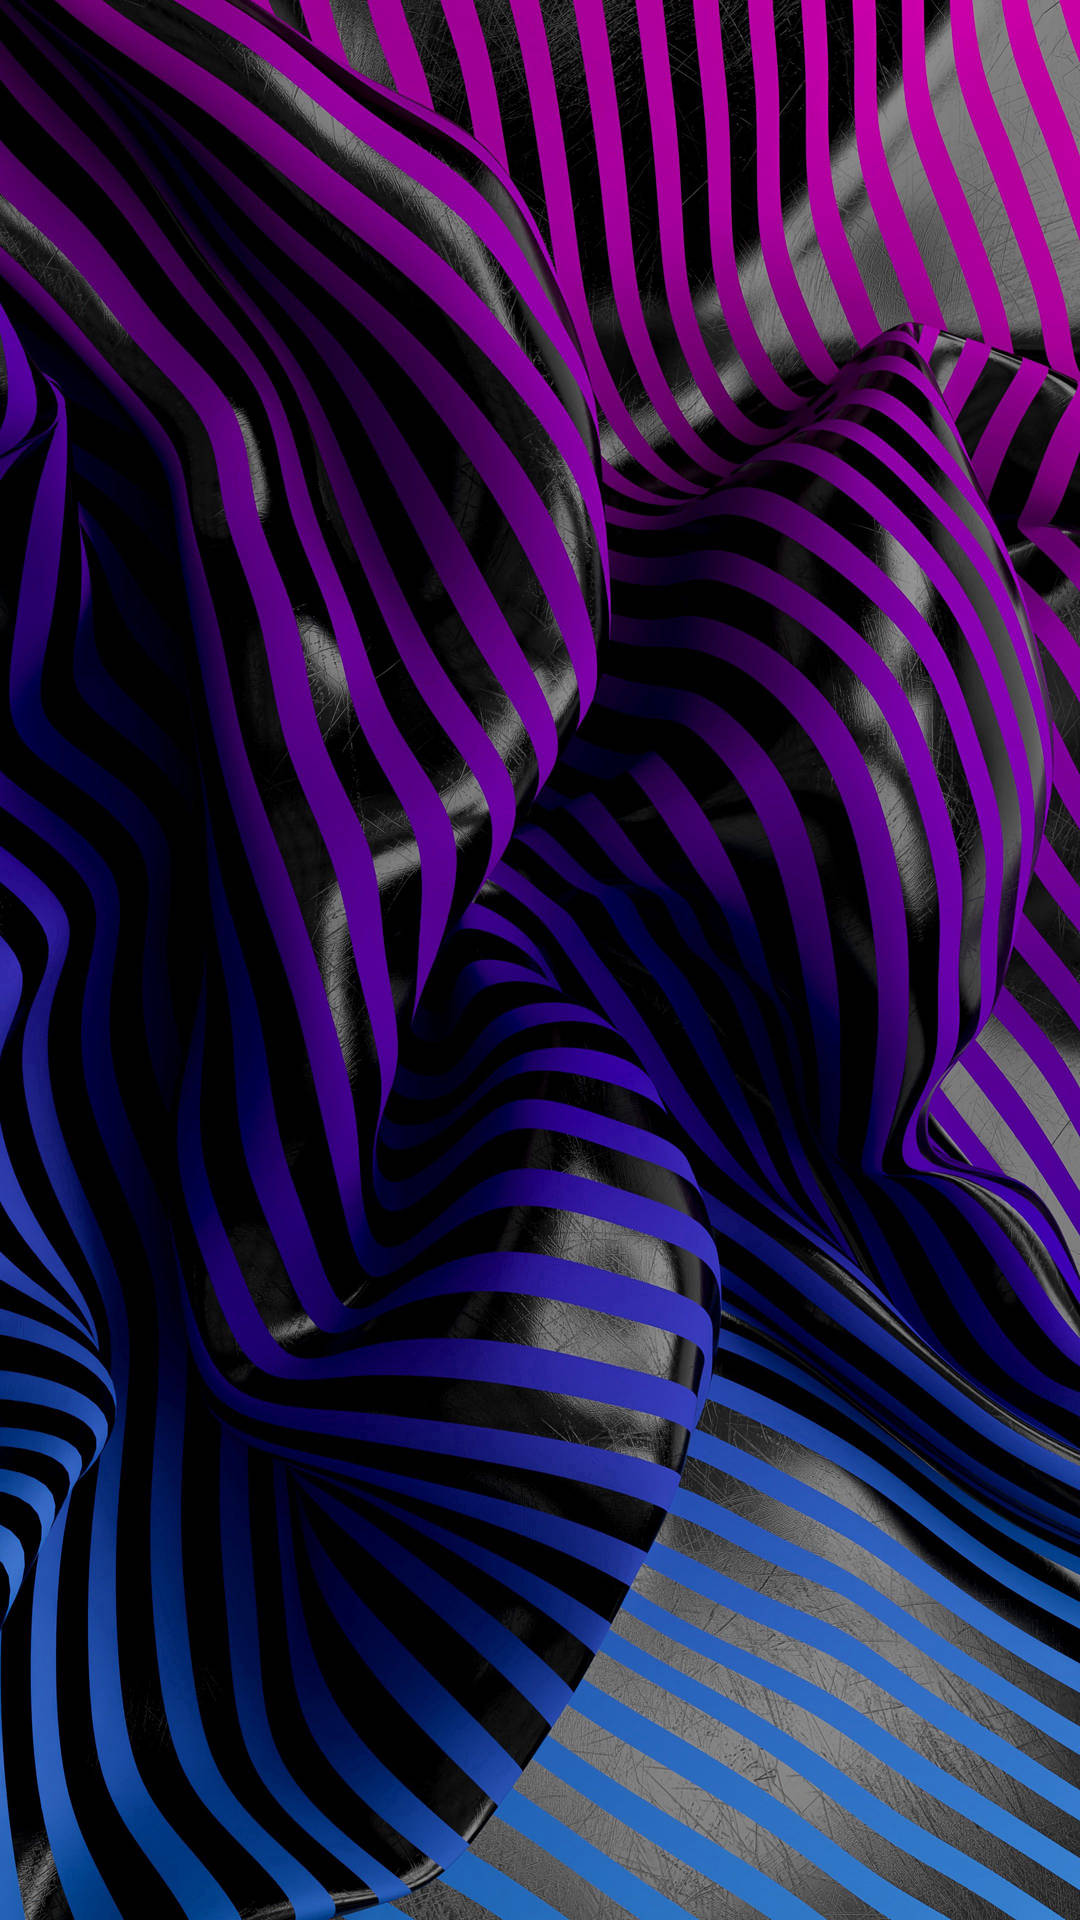 Waveform 3d Violet Striped Abstract Background